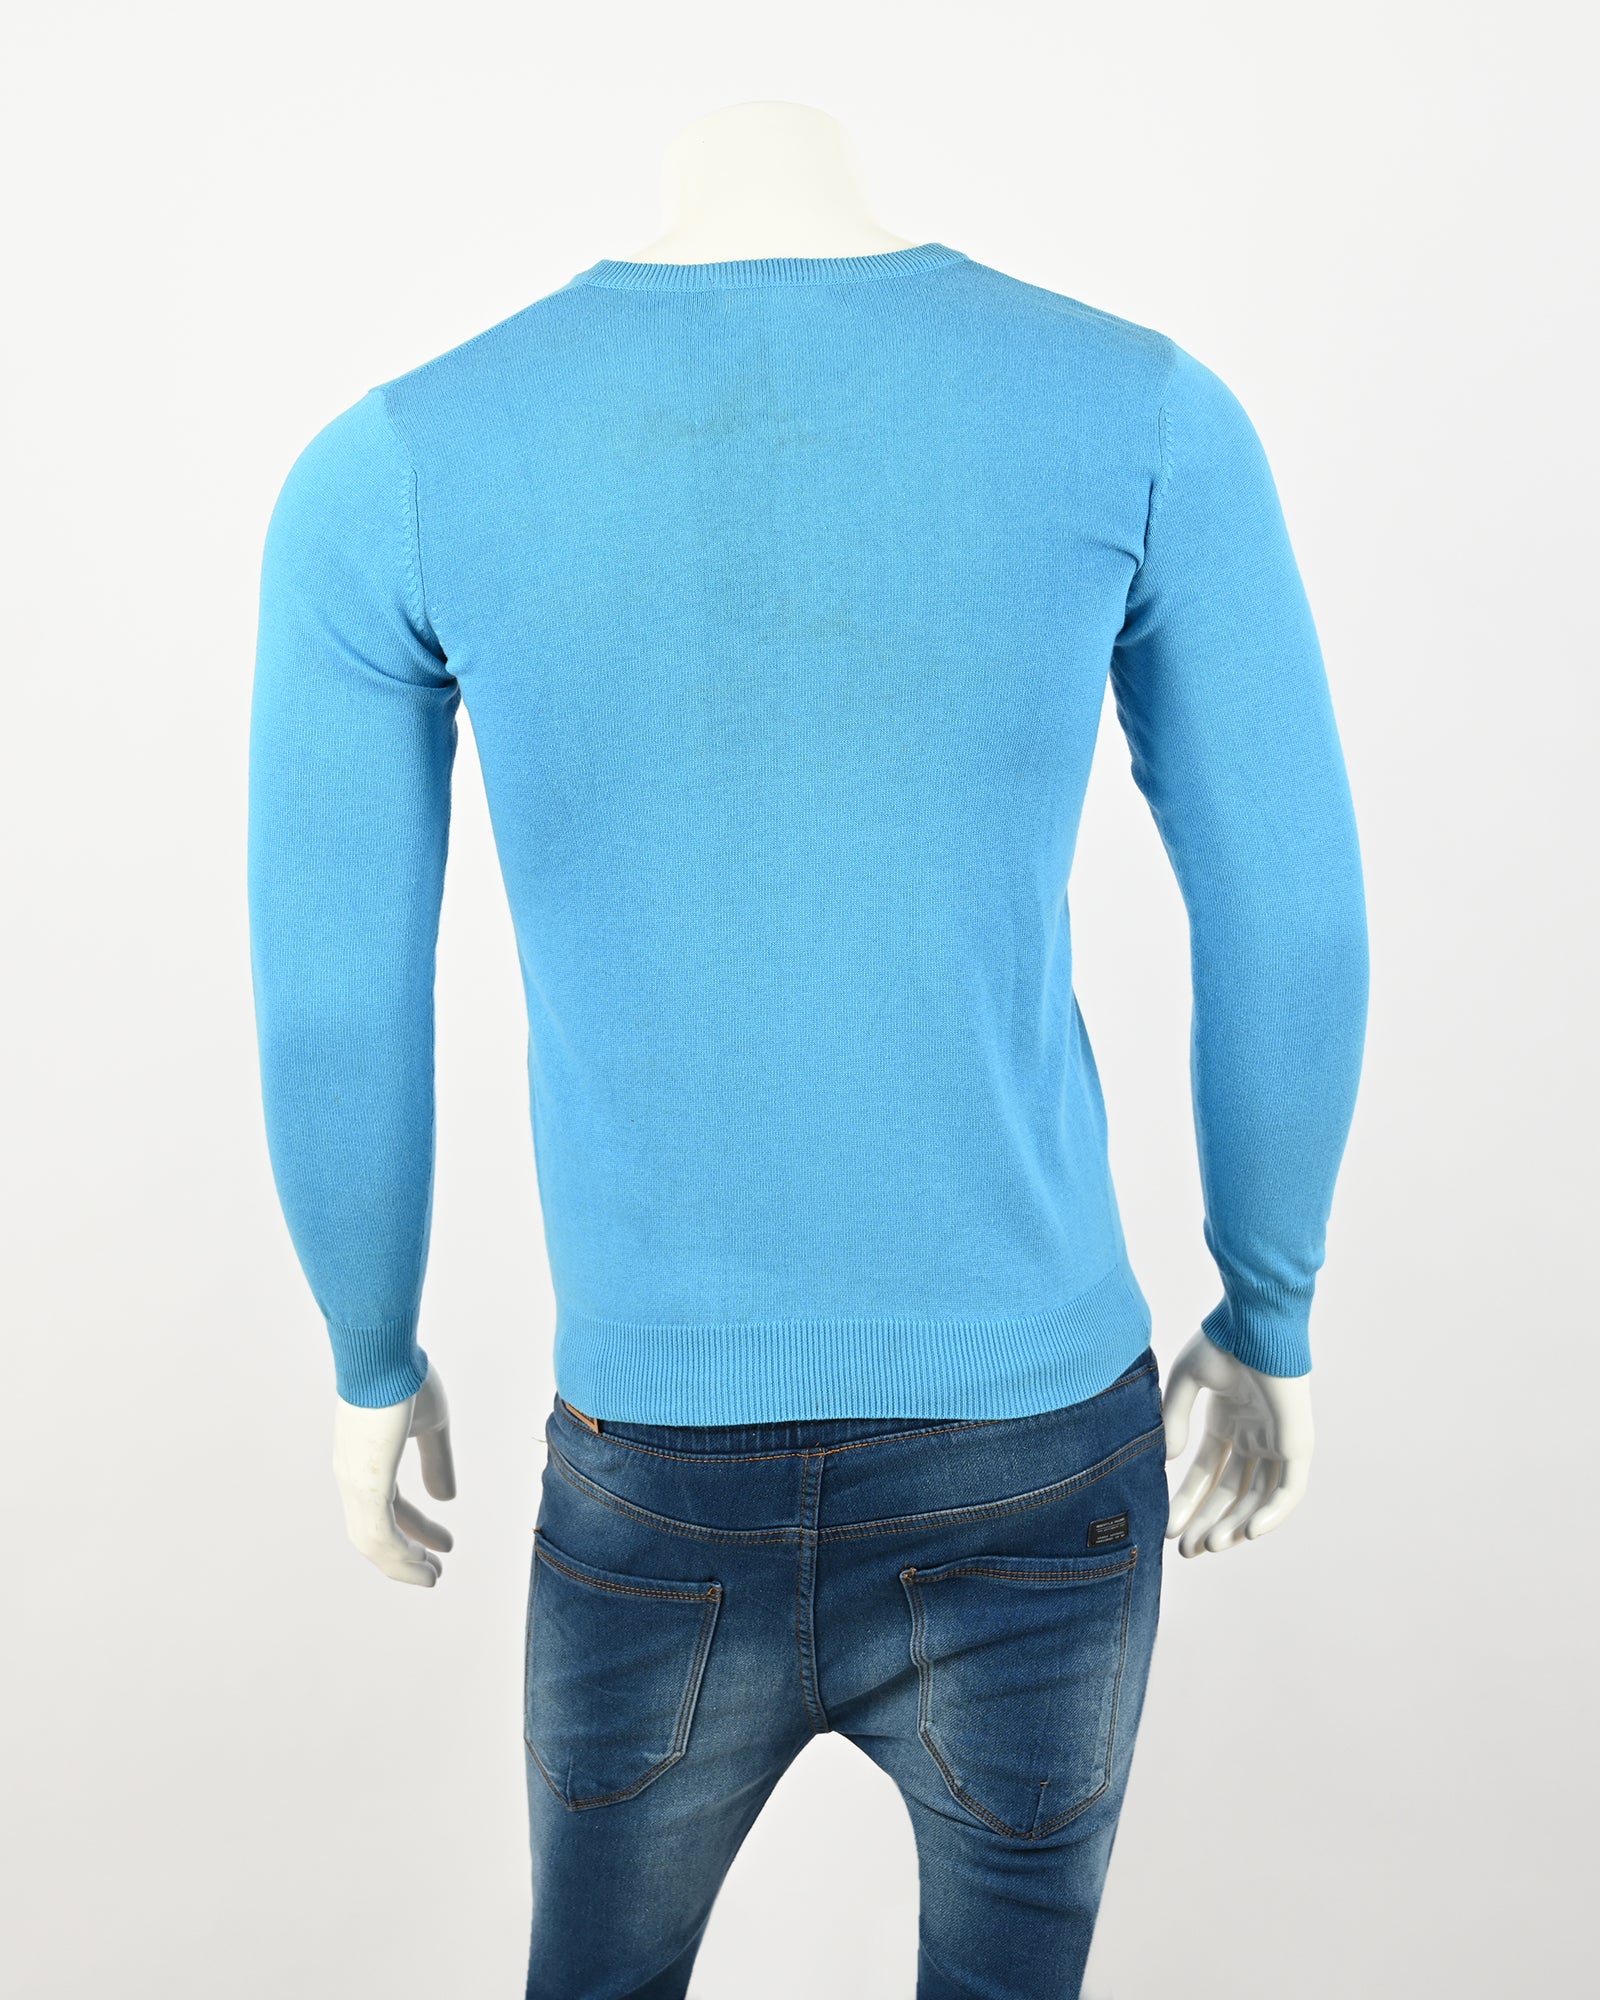 Men's Printed Sweater